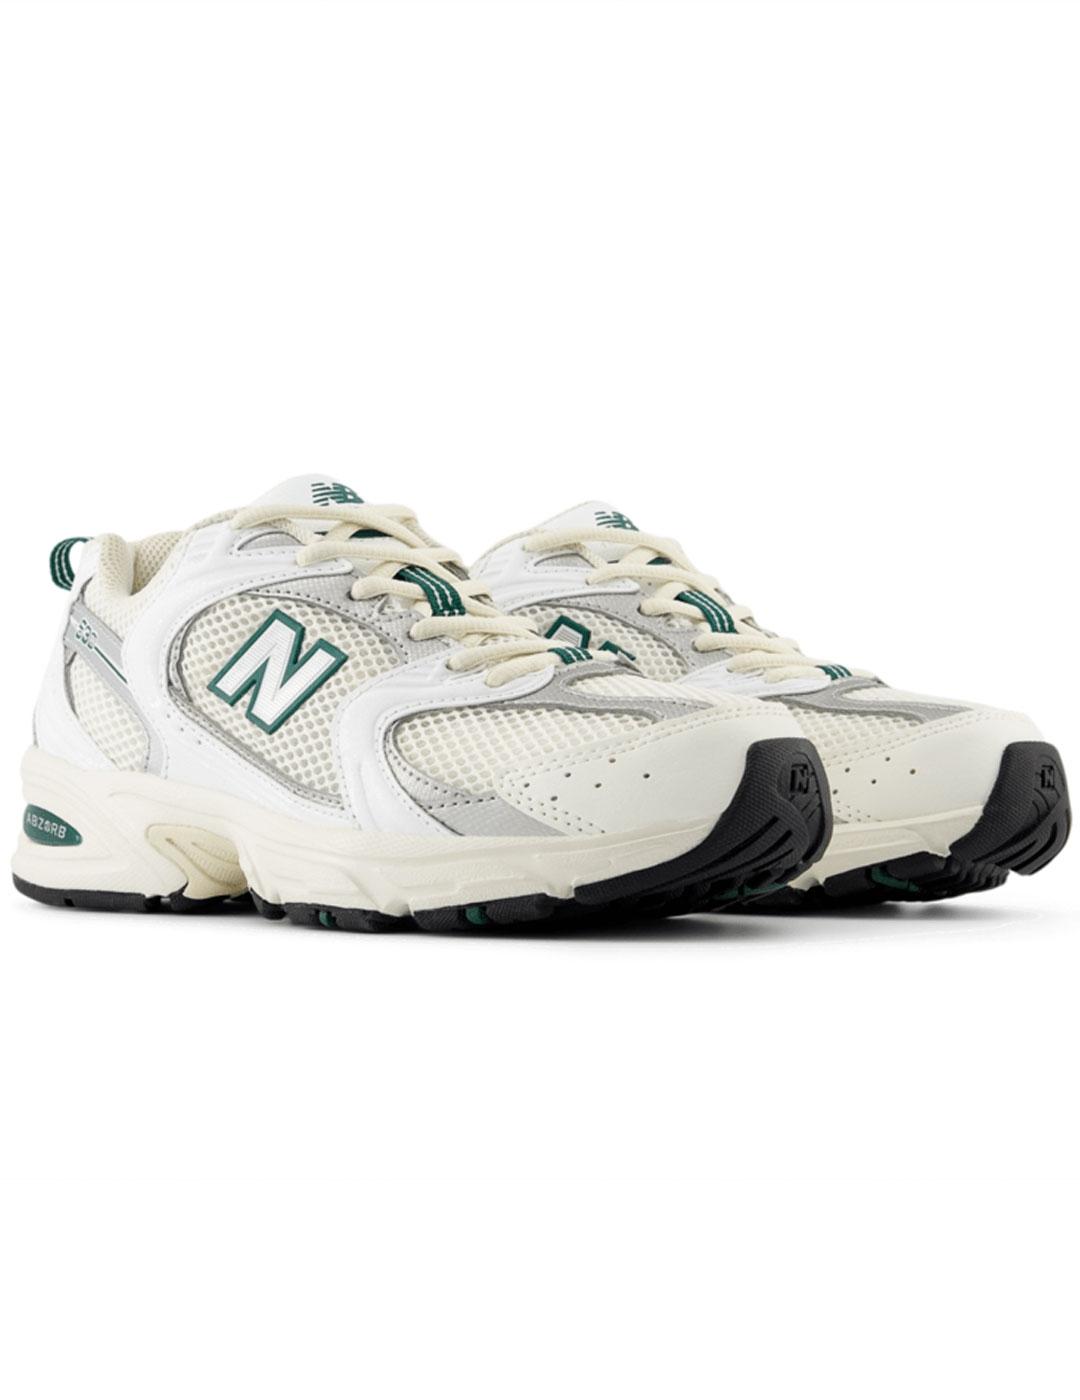 Zapatillas New Balance 530 blancas con la N verde